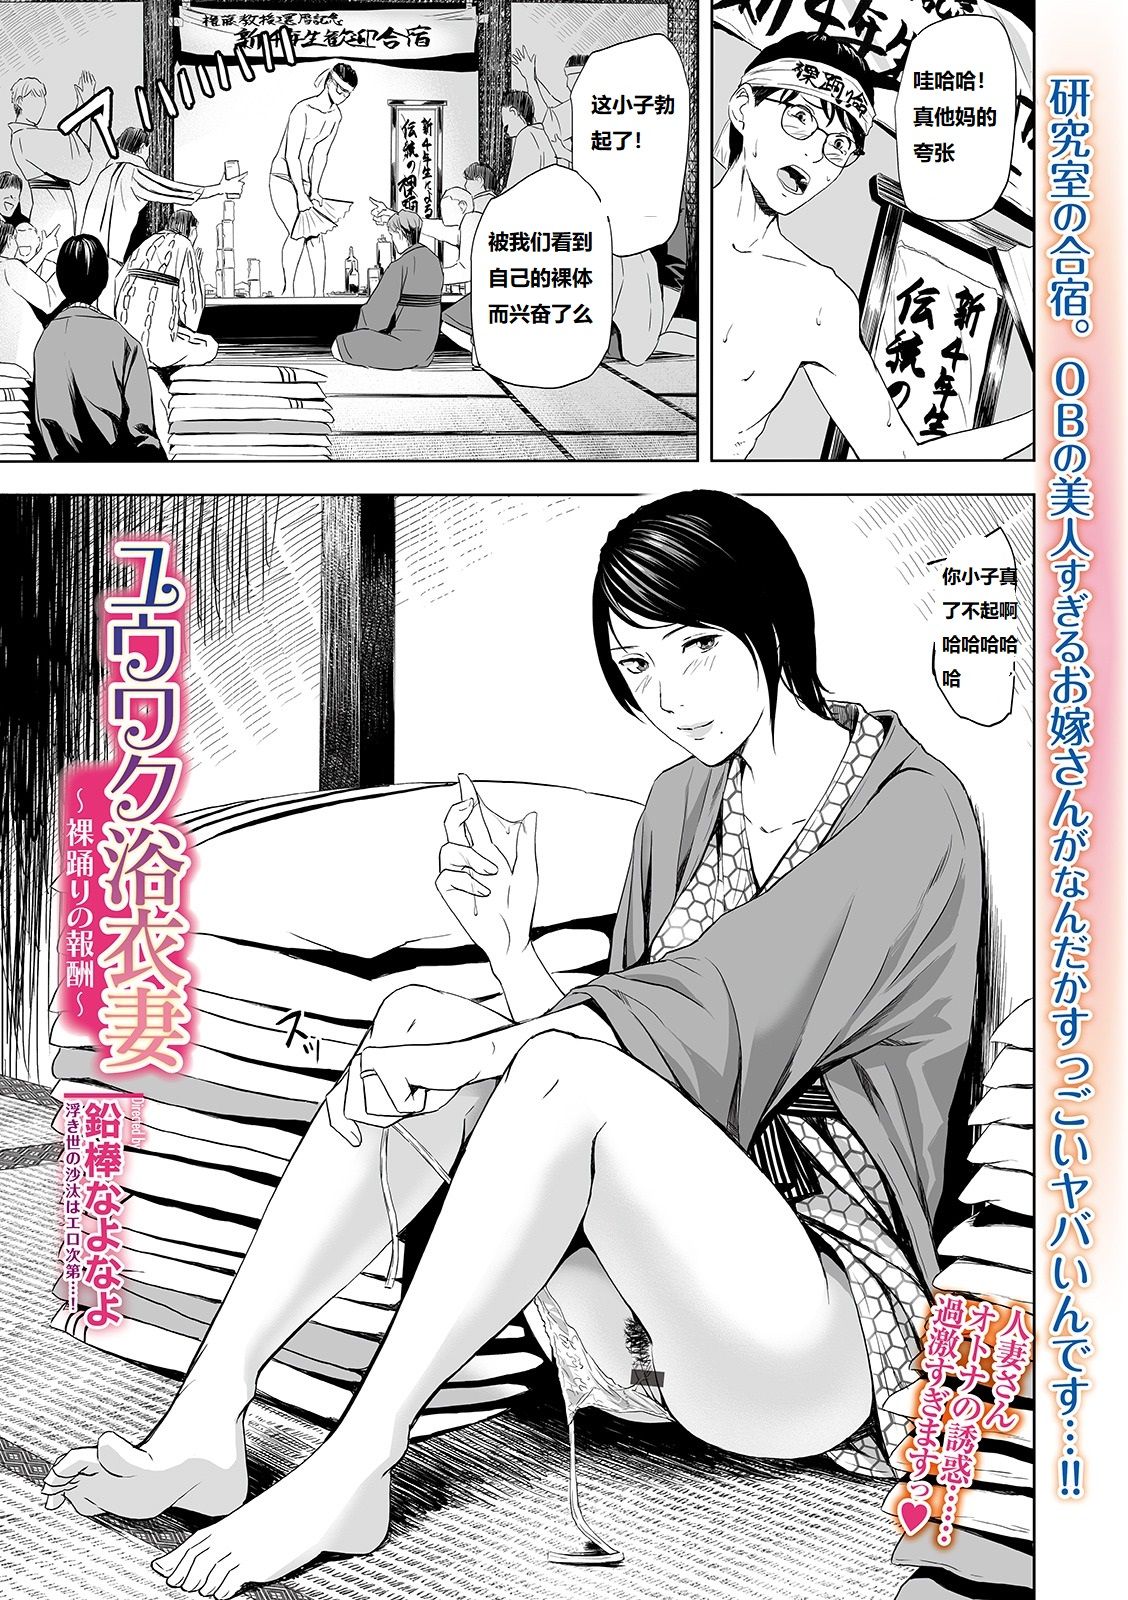 [鉛棒なよなよ] ユウワク浴衣妻 〜裸踴りの報酬〜 (Web Comic Toutetsu Vol. 46) [24P] - 情色卡漫 -